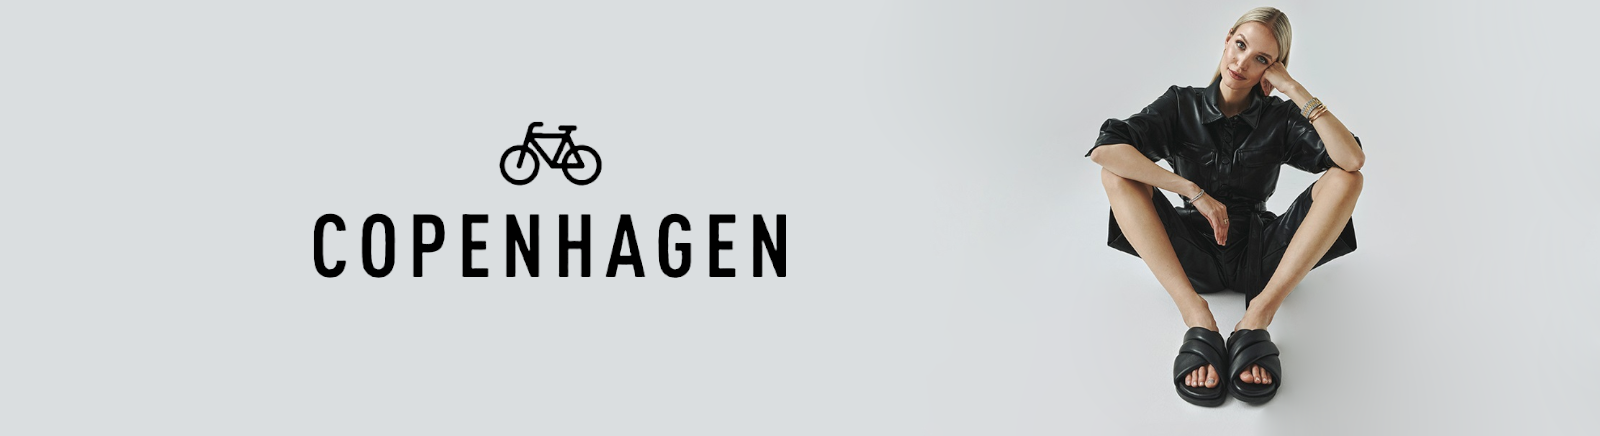 Prange: Copenhagen Sandalen für Damen online kaufen online shoppen